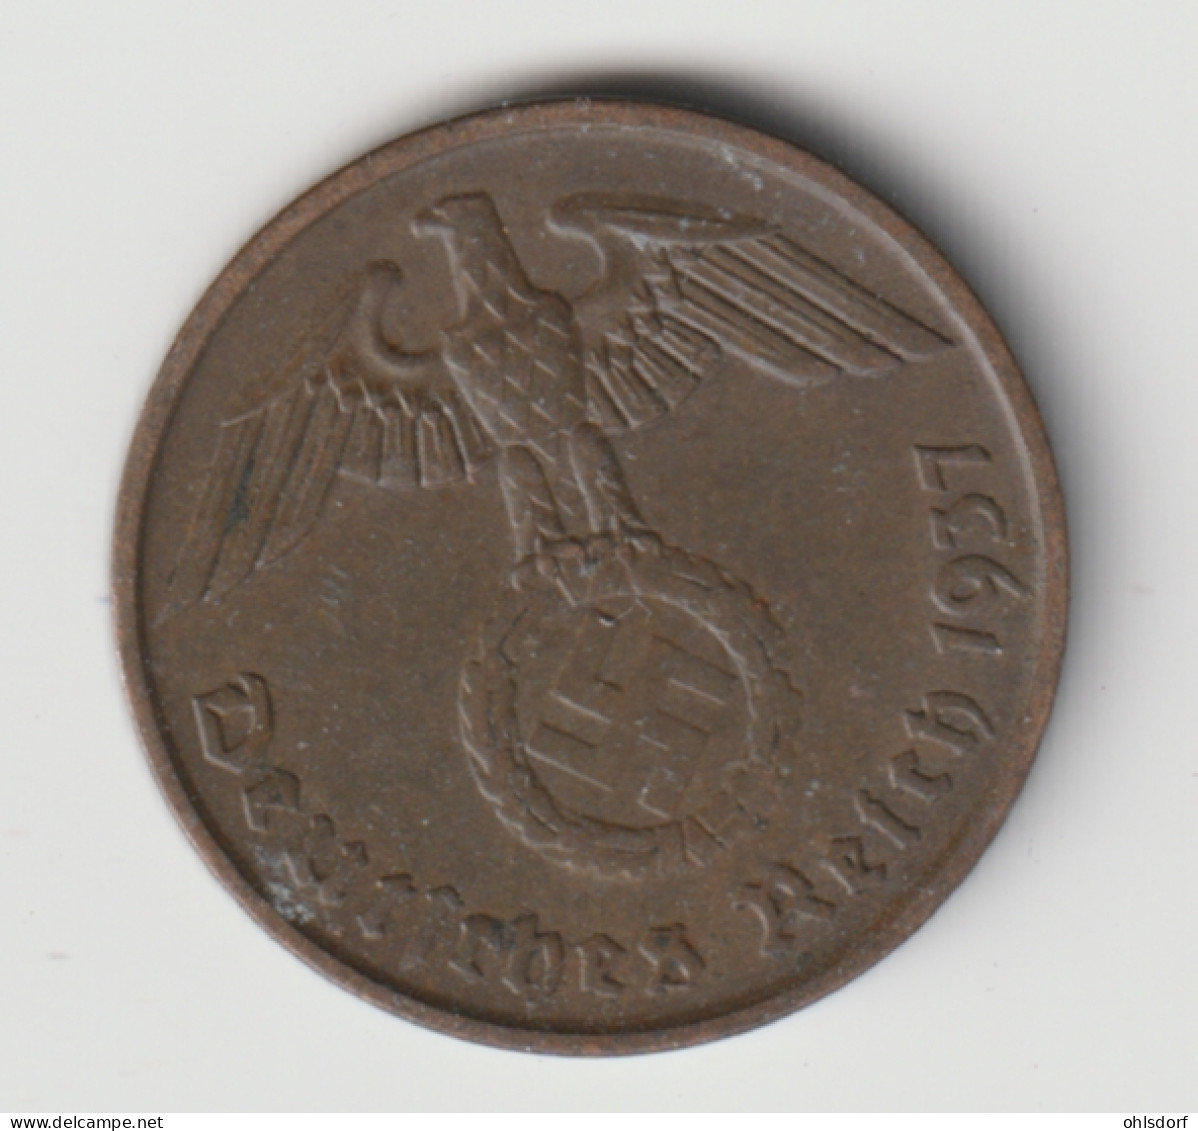 DEUTSCHES REICH 1937 A: 2 Reichspfennig, KM 90 - 2 Reichspfennig